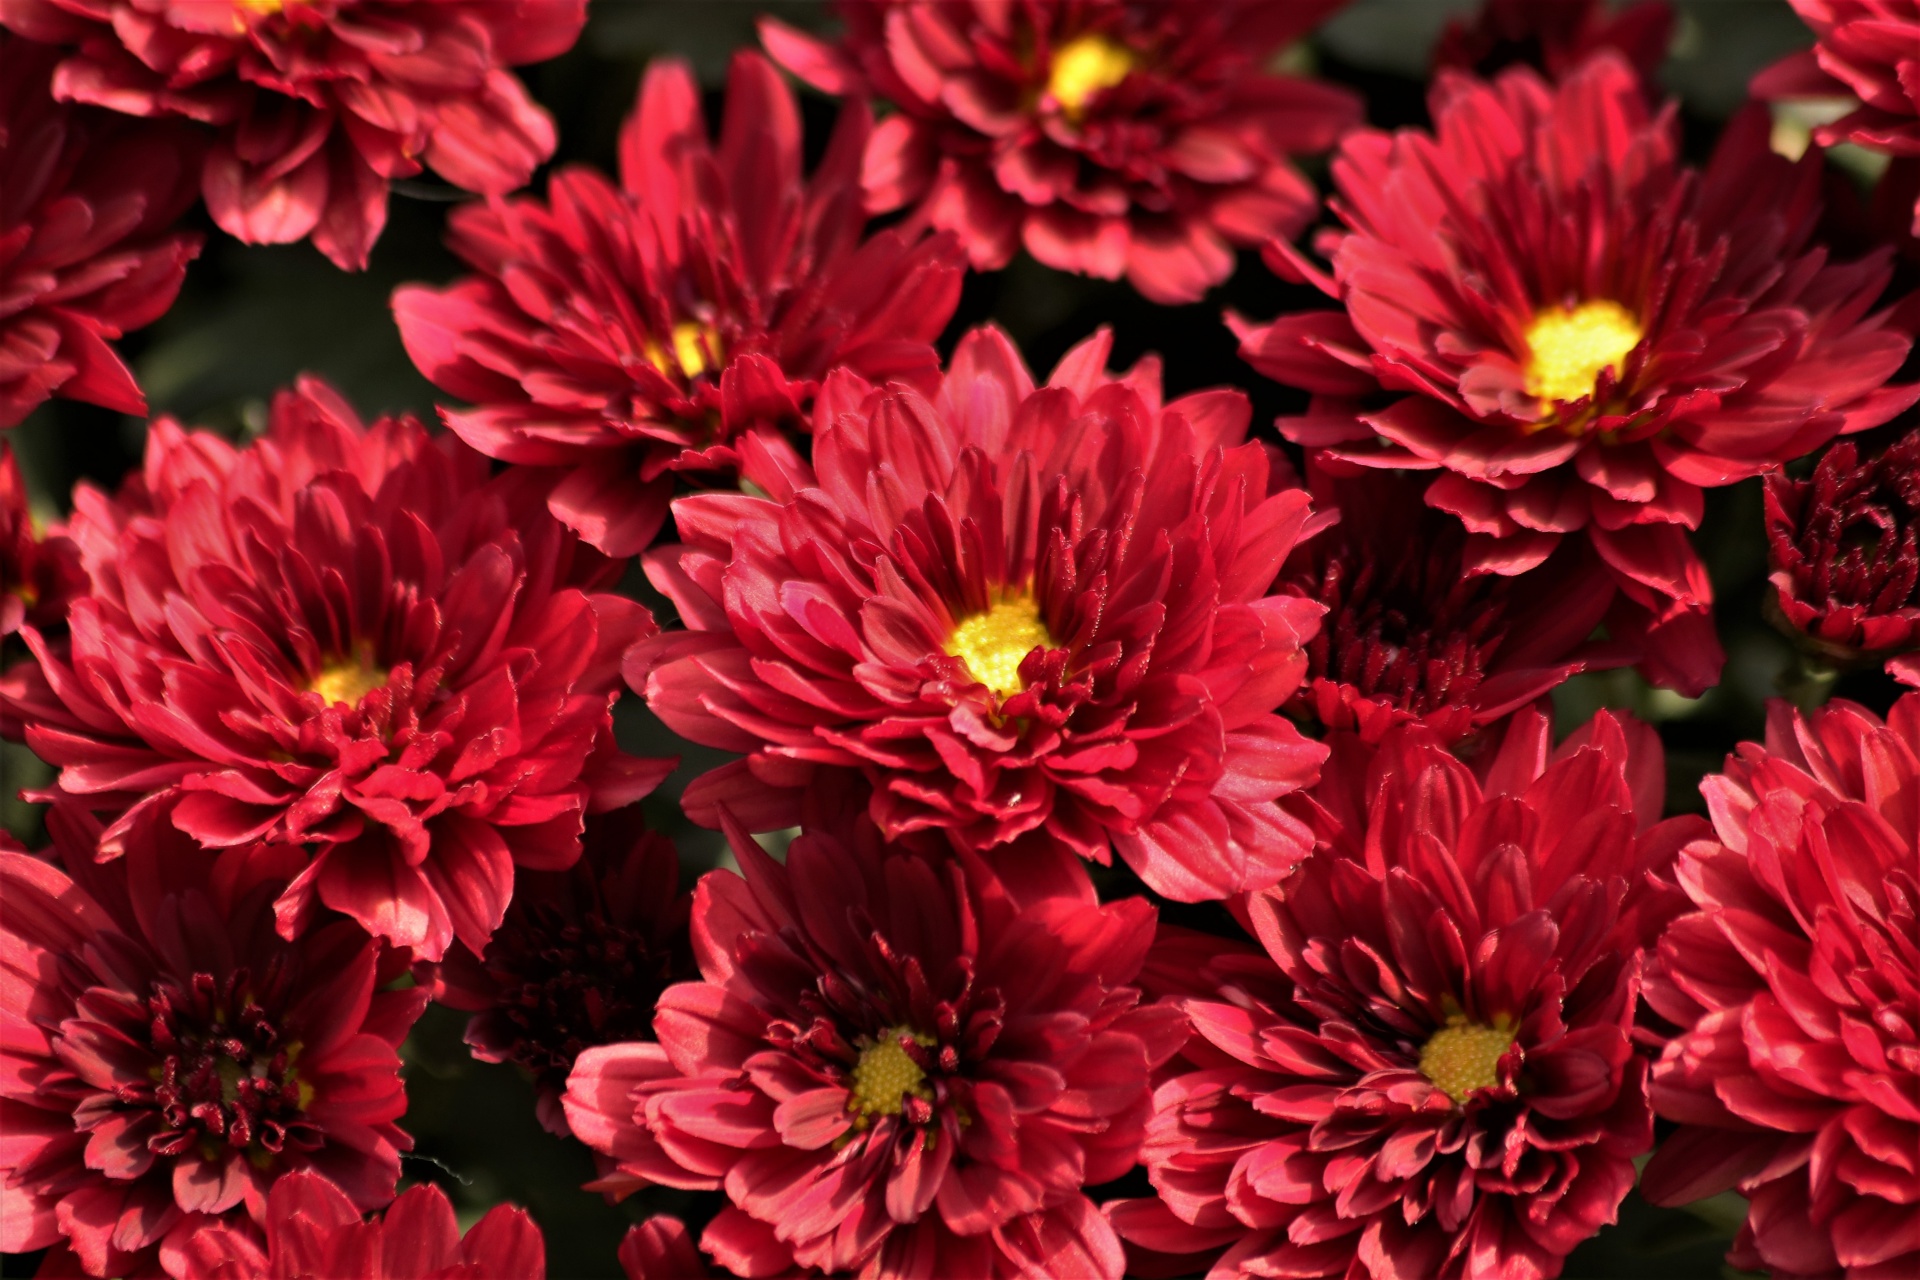 赤い菊の花のクローズアップ 無料画像 Public Domain Pictures